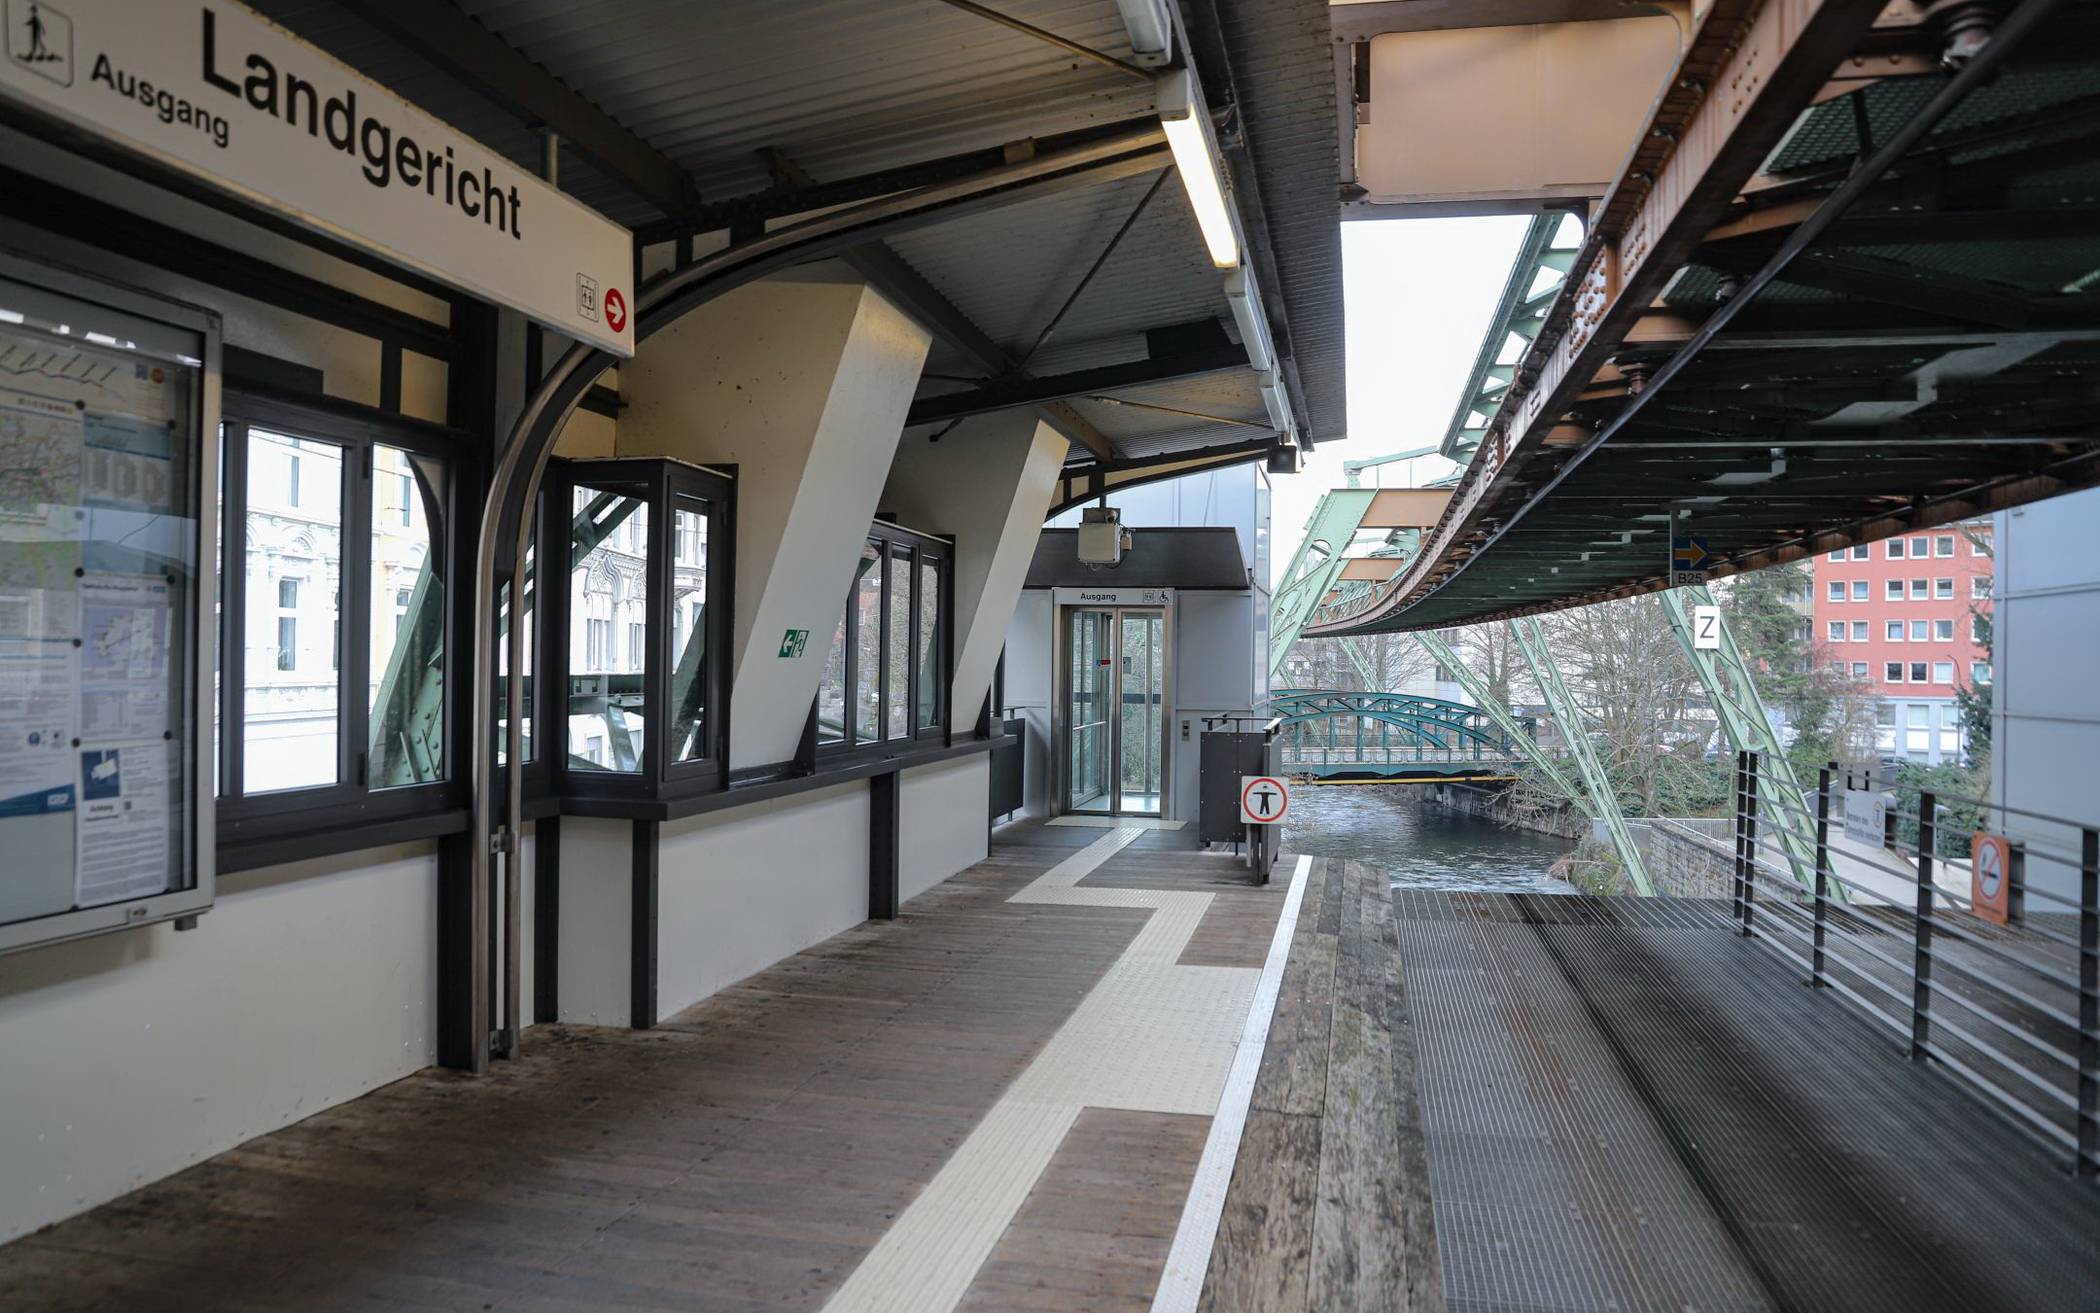  Auch die Schwebebahn-Station Landgericht bleibt am Montag geschlossen. 